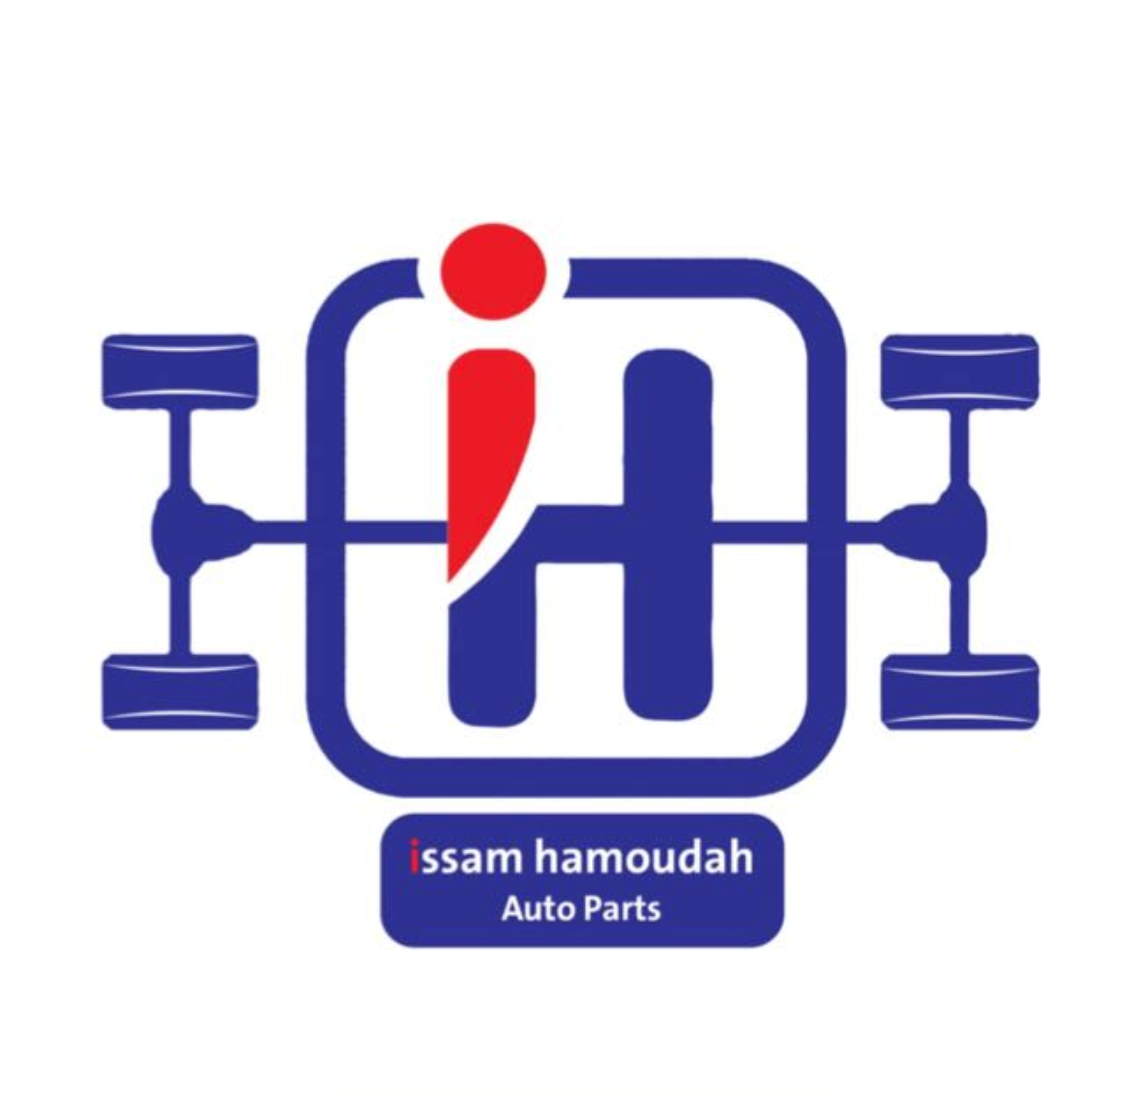 homodah logo